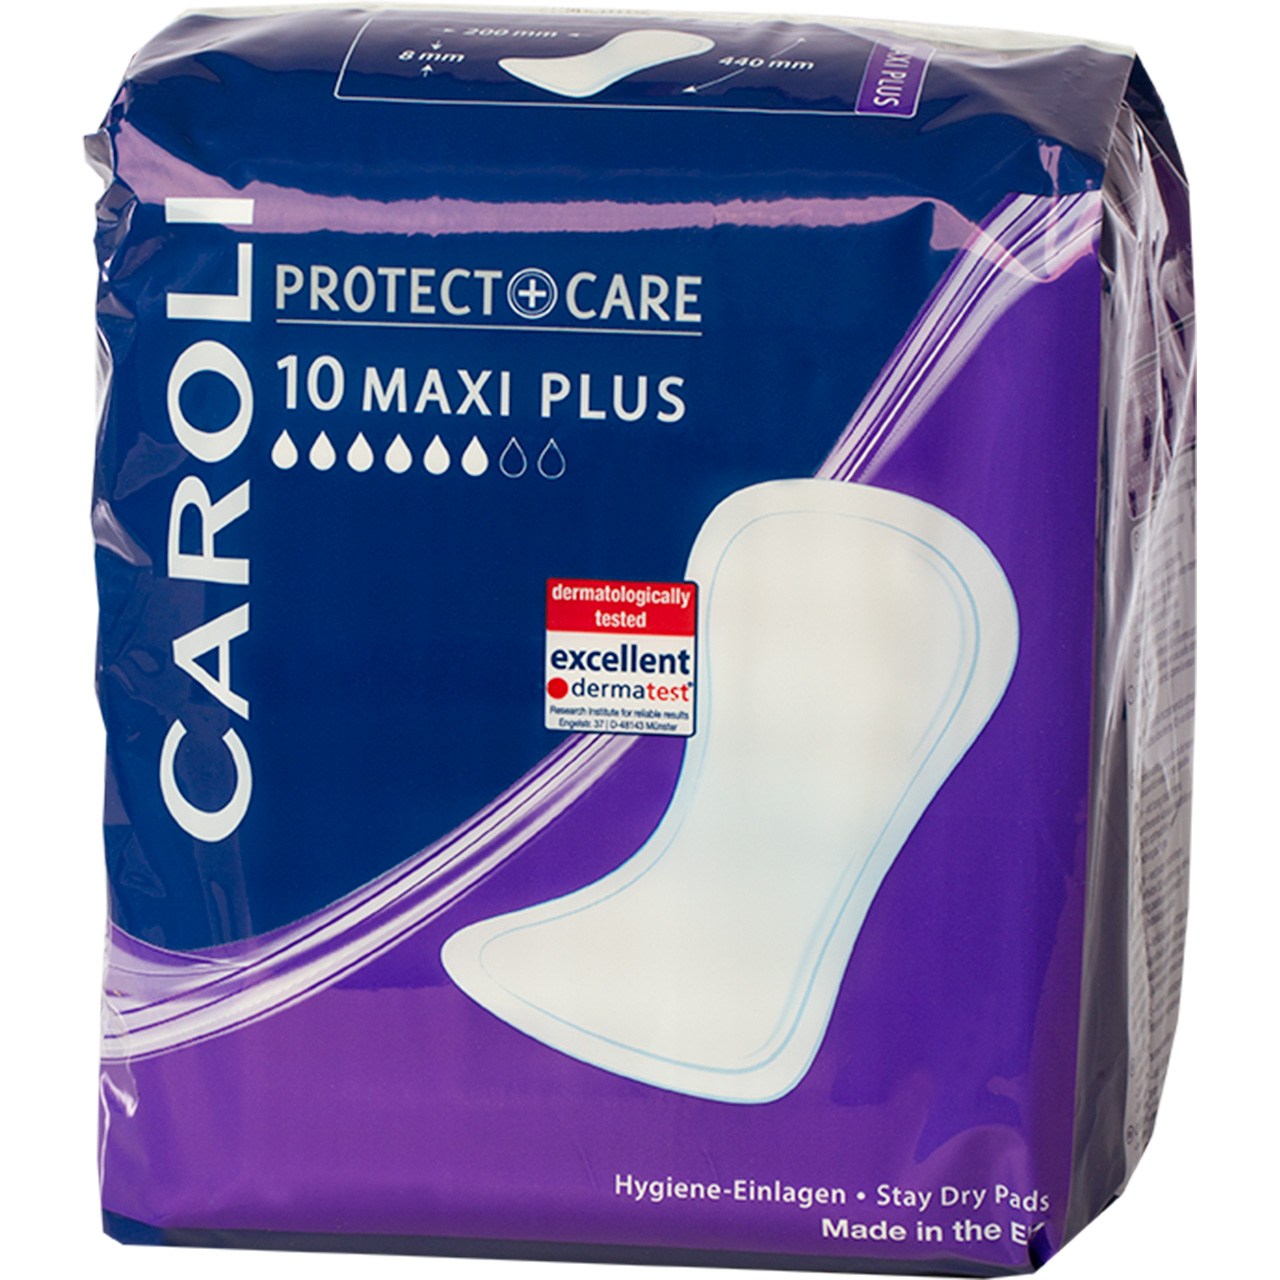 نوار بهداشتی کرولی سری Protect Plus Care مدل Maxi Plus - بسته 10 عددی